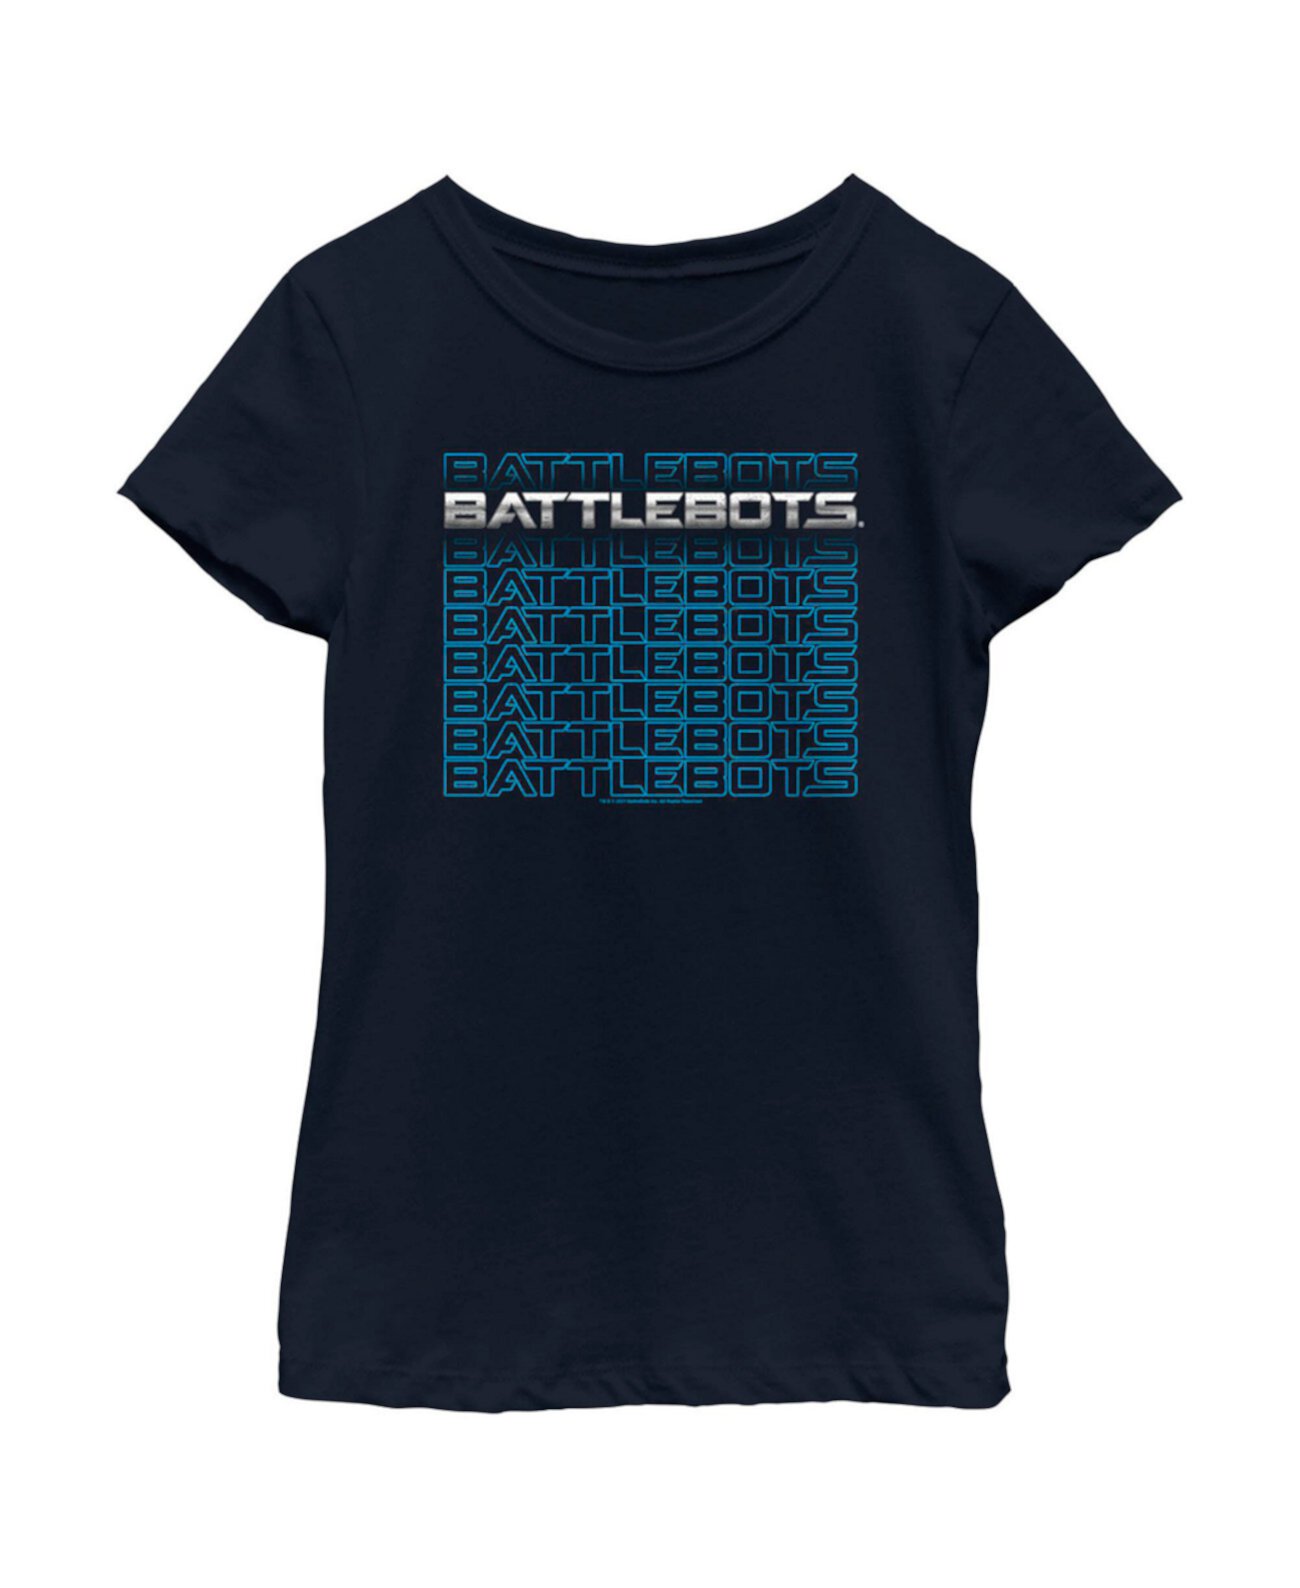 Детская футболка серебристого и синего цвета с логотипом Stack для девочек Battlebots